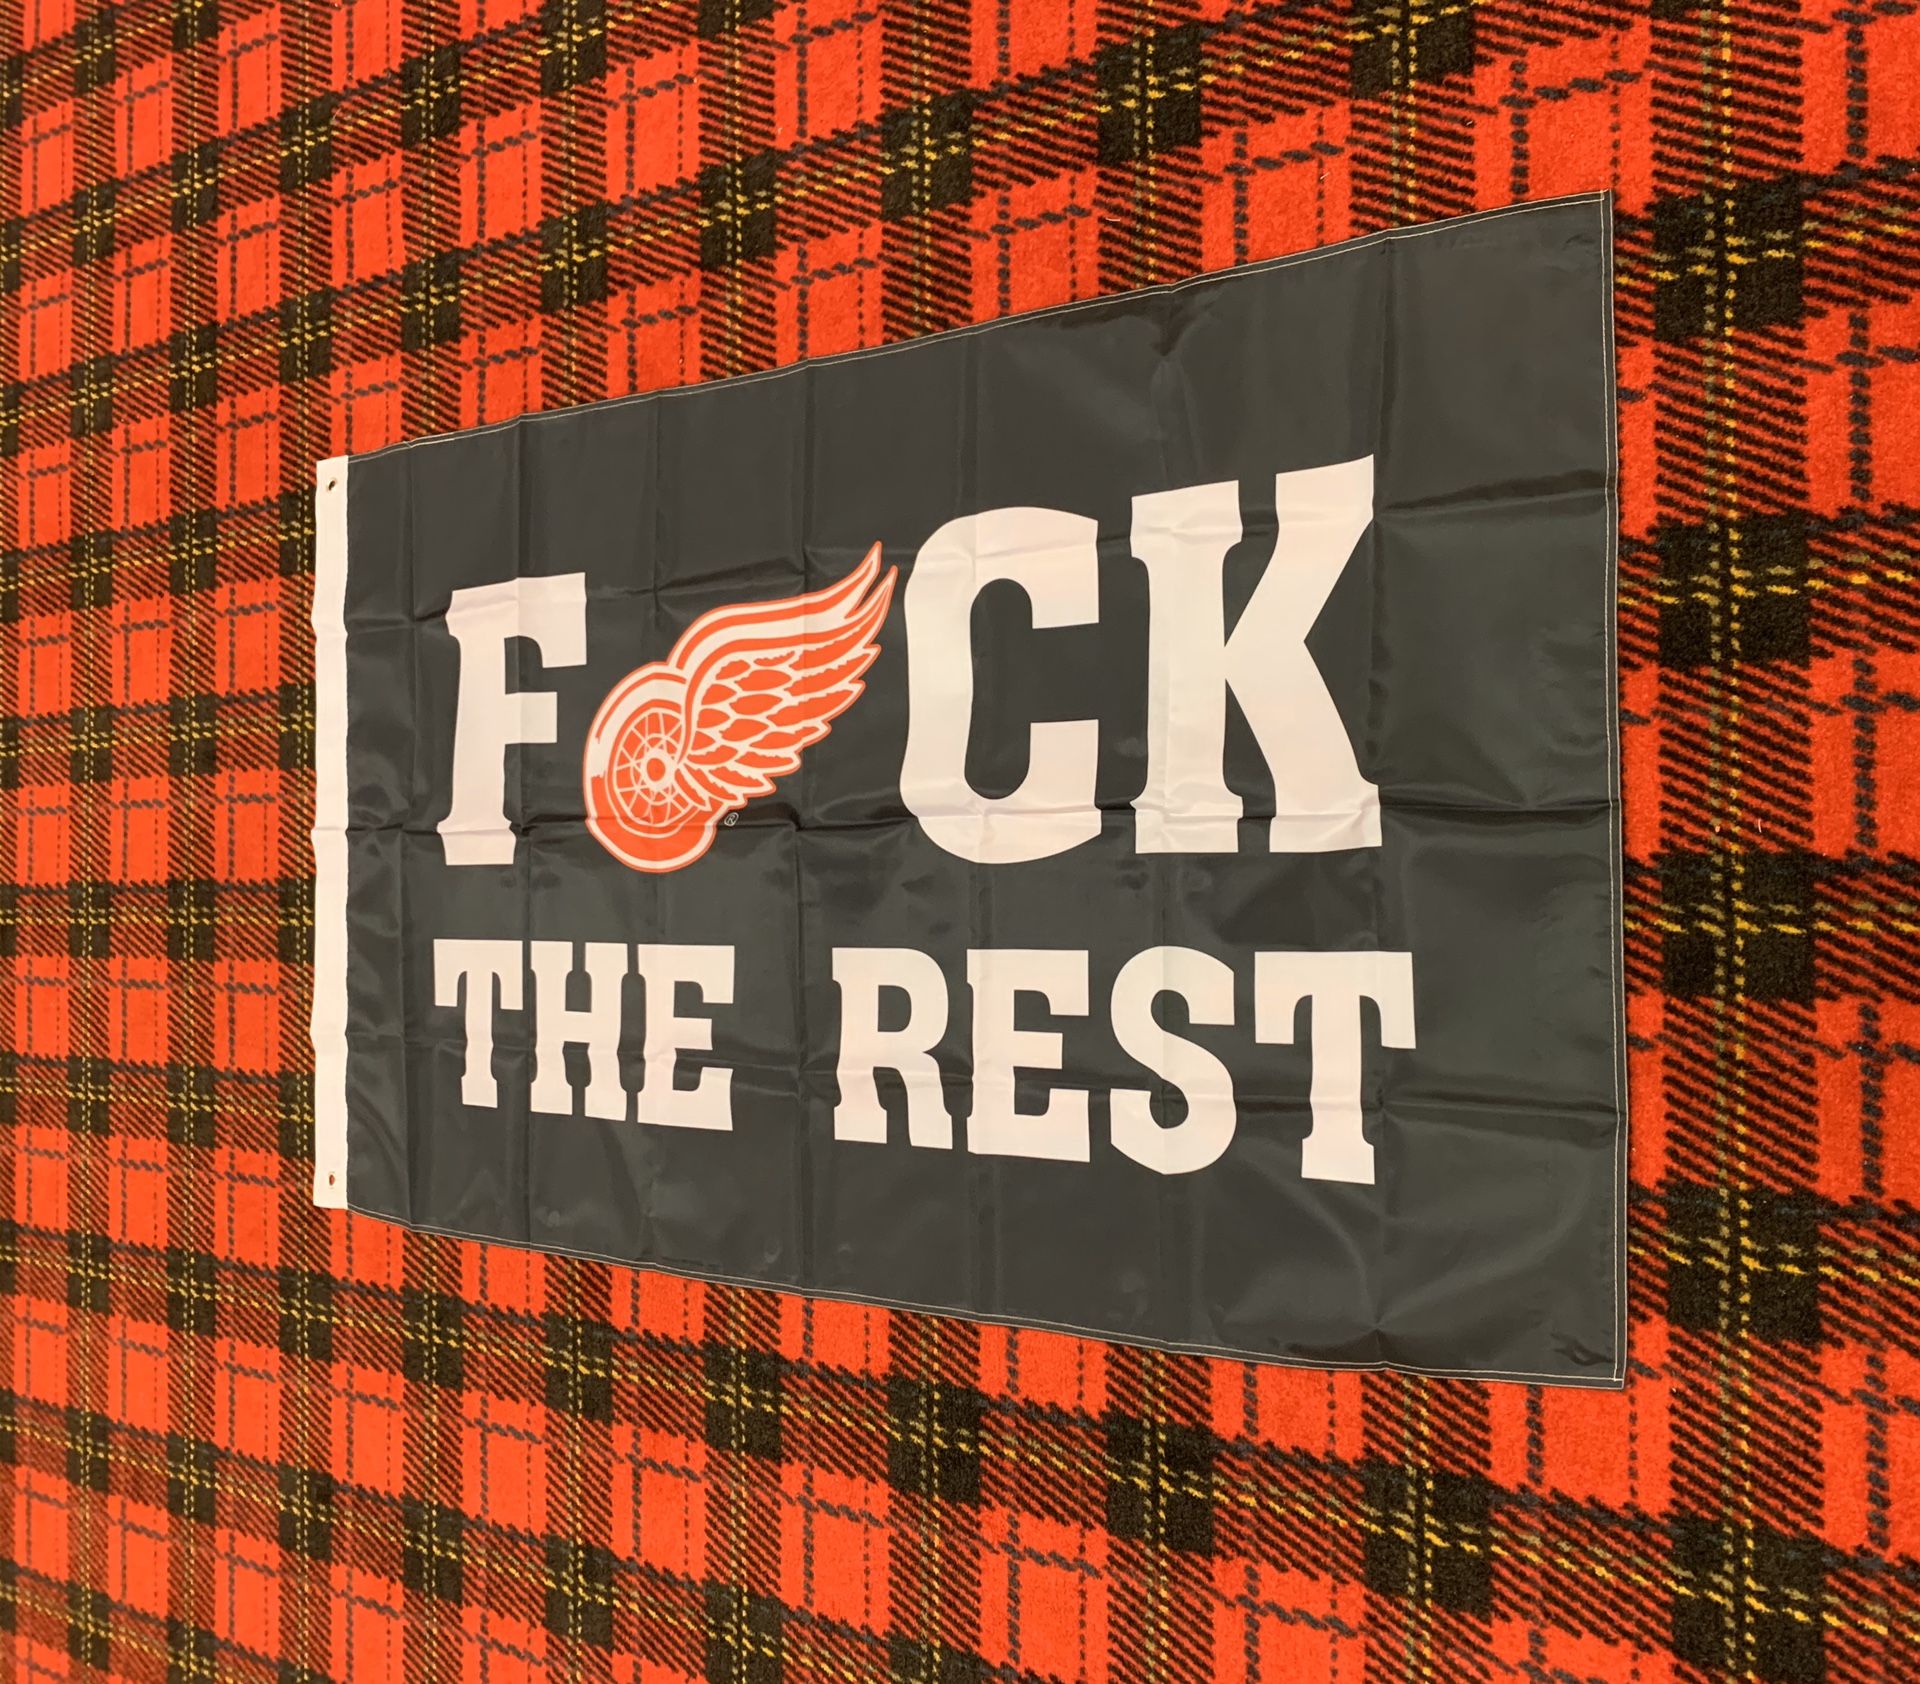 Brand new Detroit Red Wings banner flag